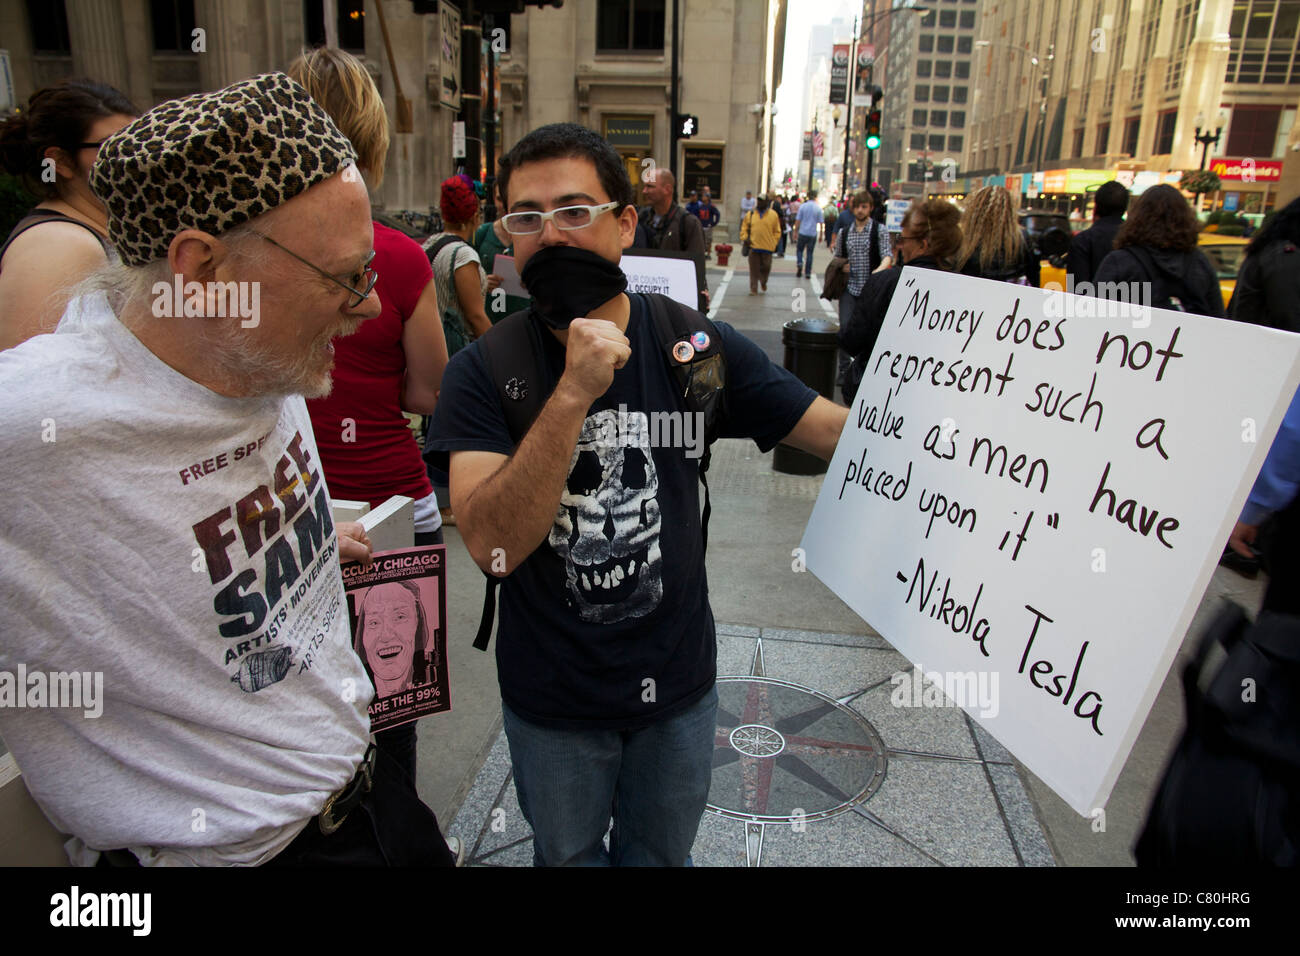 Protestataires avec inscription citant Tesla. Chicago occupent de protestation. "L'argent ne représente pas une telle valeur que les hommes ont placé dessus.' Banque D'Images